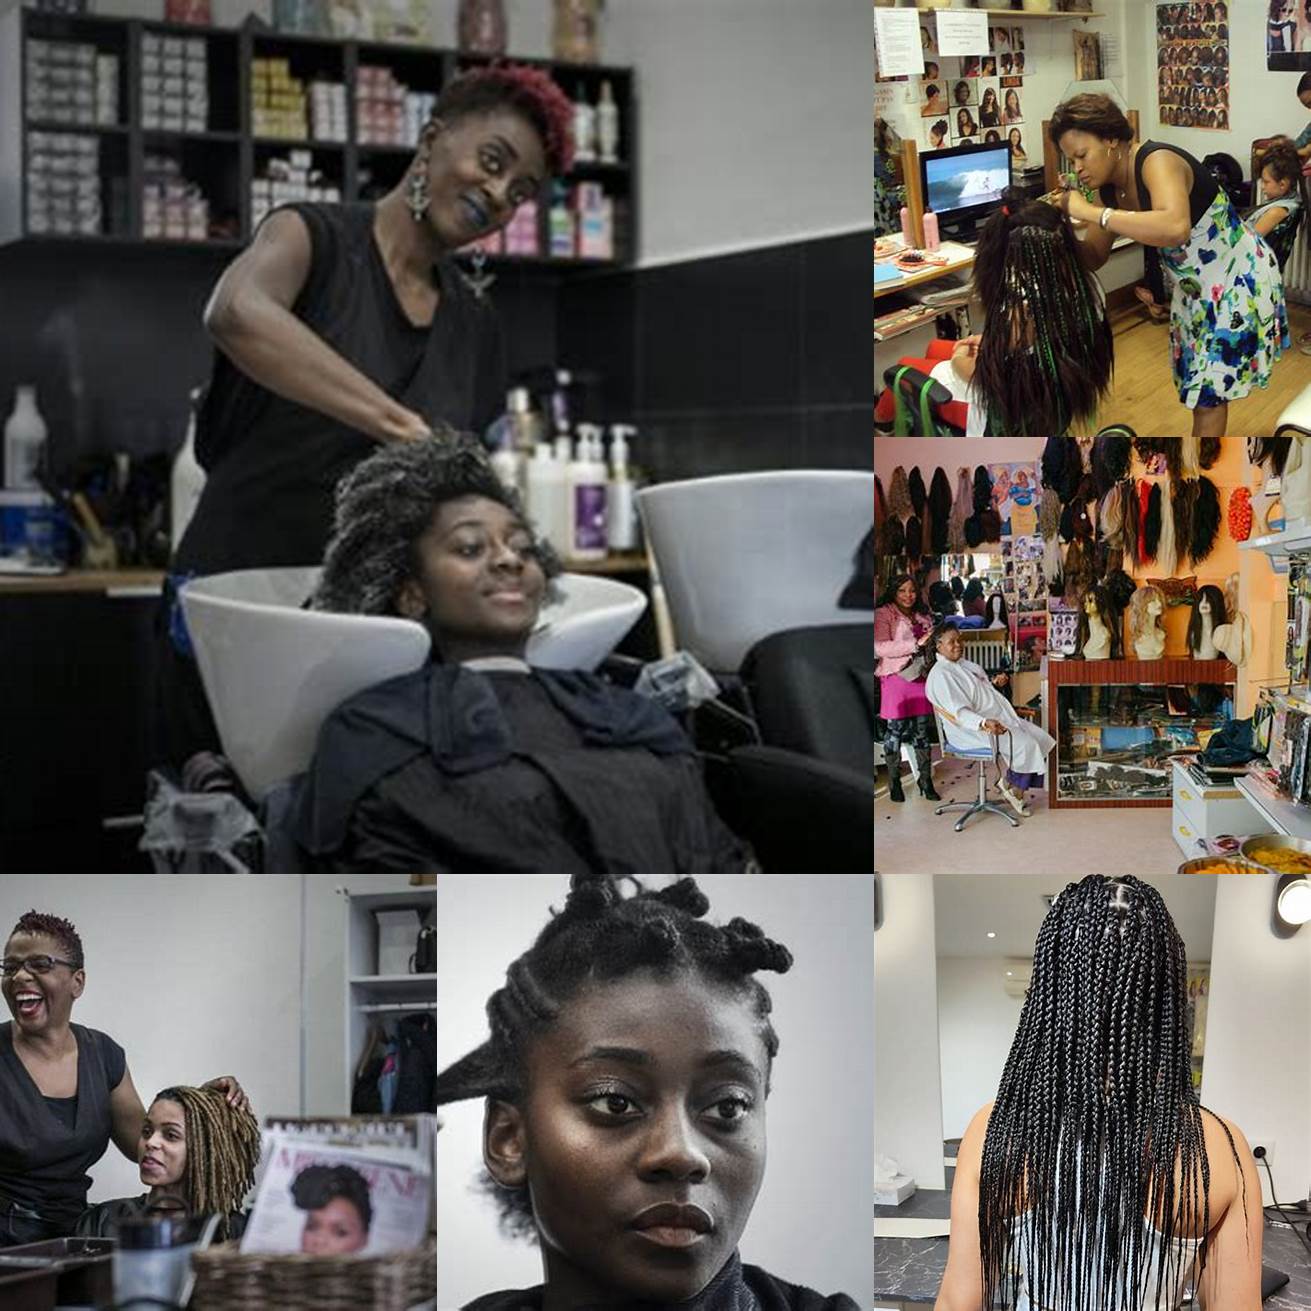 Salon Afro Diva Ce salon est spécialisé dans les coiffures afro pour femmes notamment les tresses les vanilles et les crochets Le personnel est expérimenté et à lécoute de vos besoins